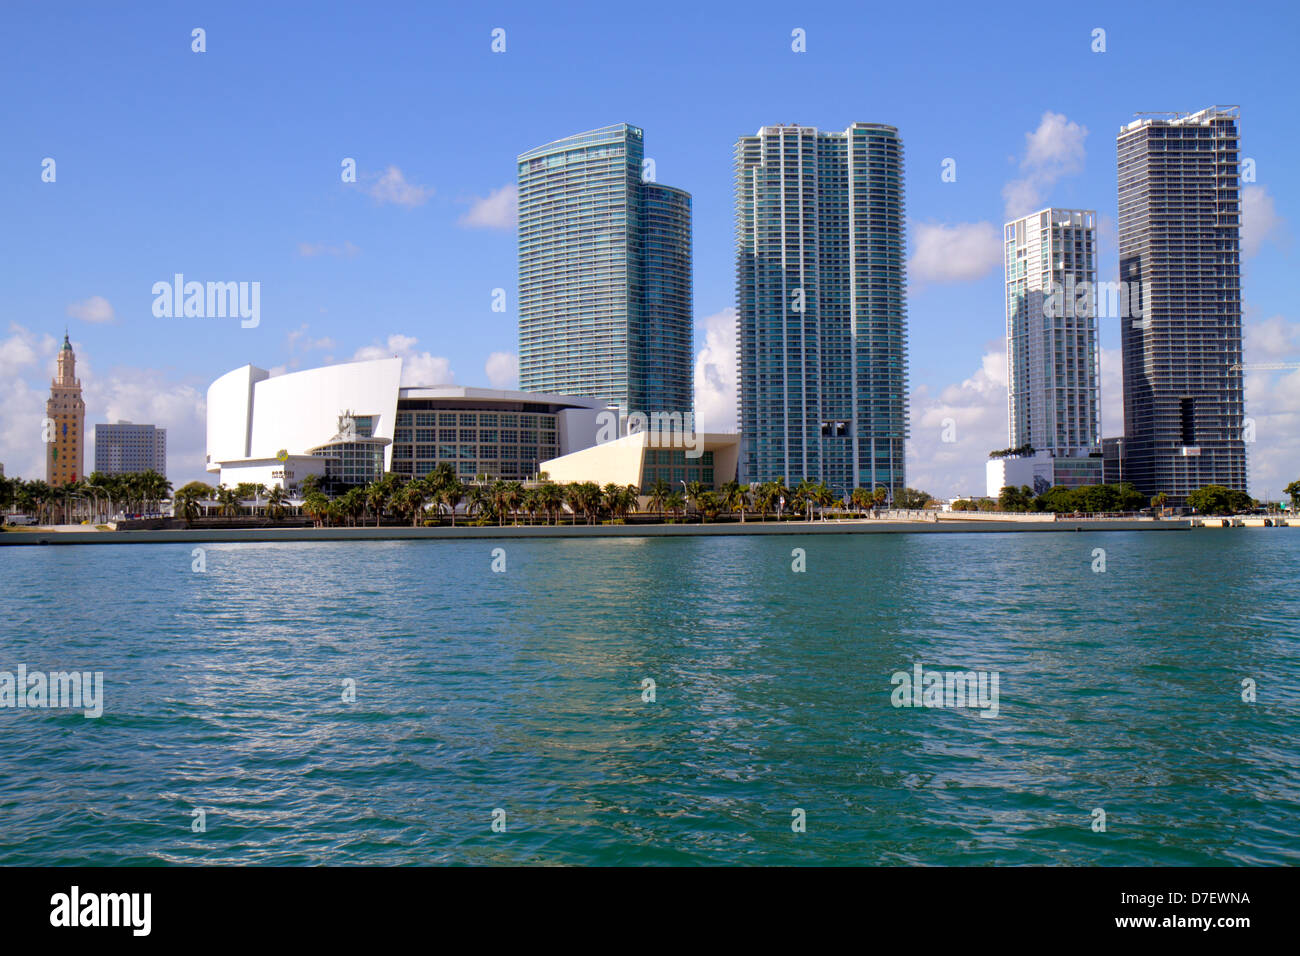 Miami Florida, Biscayne Bay, Biscayne Boulevard, Skyline, Wasser, Wolkenkratzer, Hochhäuser Wolkenkratzer Gebäude Wohnanlage AP Stockfoto